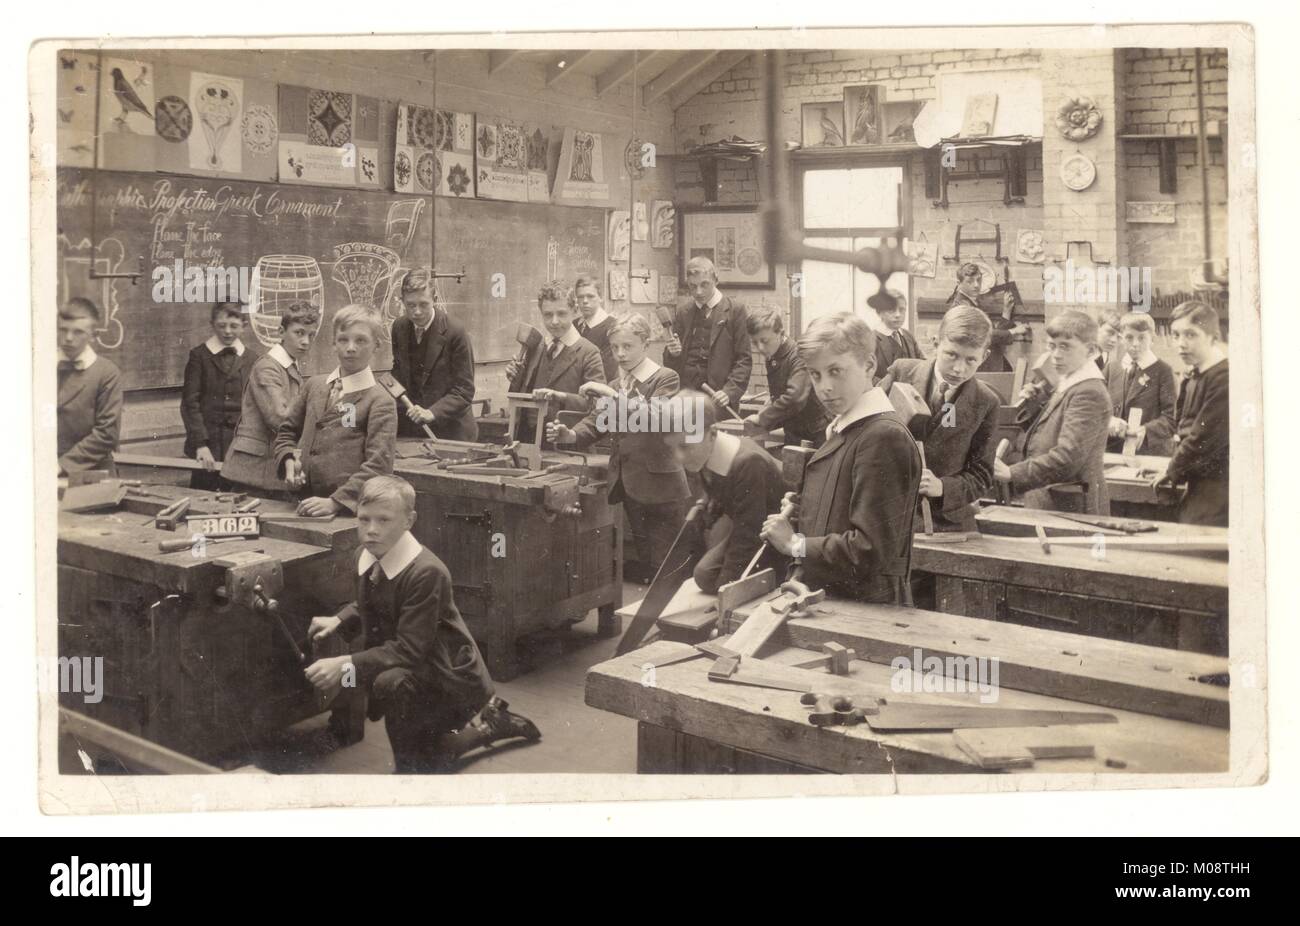 Cartolina edoardiana originale dei primi anni '1900 degli scolari edoardiani in falegnameria classe carpenteria, Classe 362, lezione di intaglio, circa 1910, probabilmente Yorkshire, Inghilterra Regno Unito Foto Stock